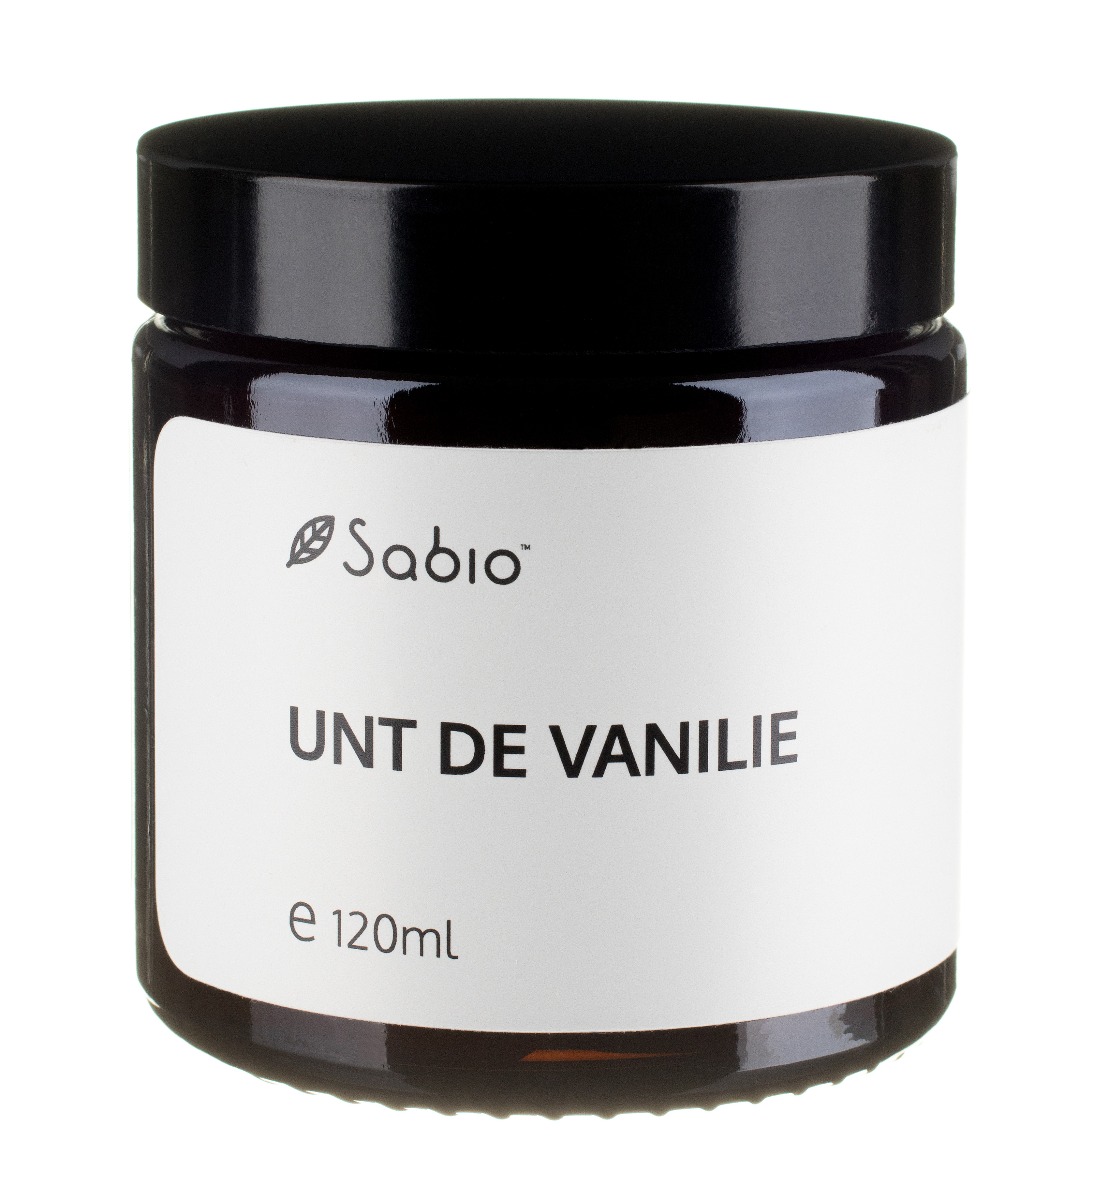 Unt de vanilie, 120ml, Sabio